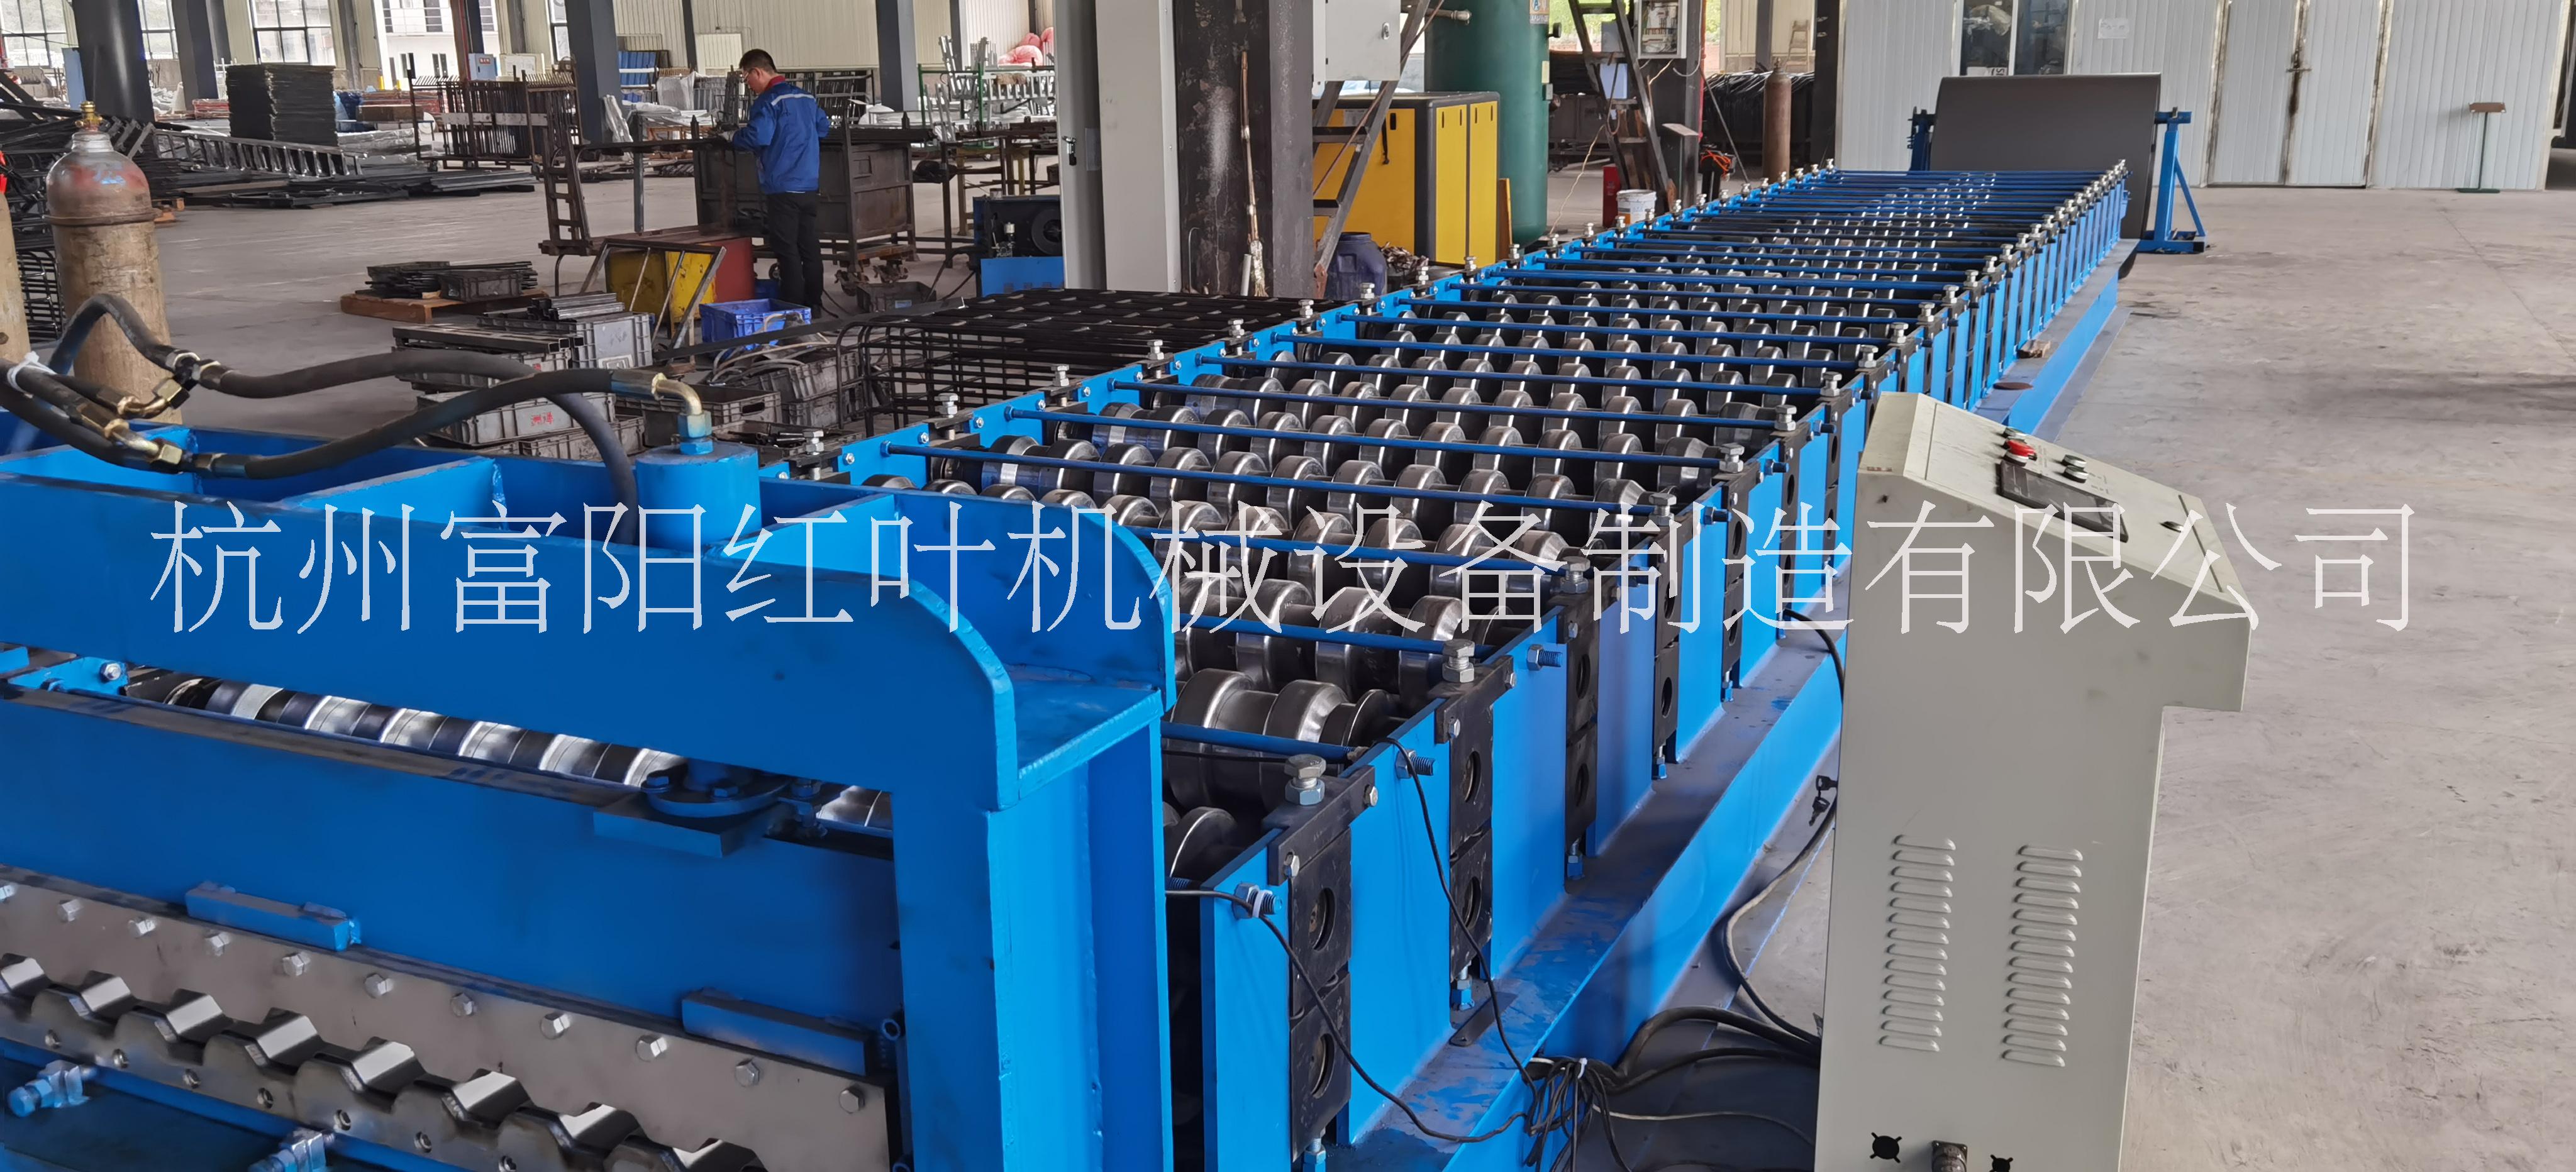 杭州富阳红叶机械设备制造有限公司